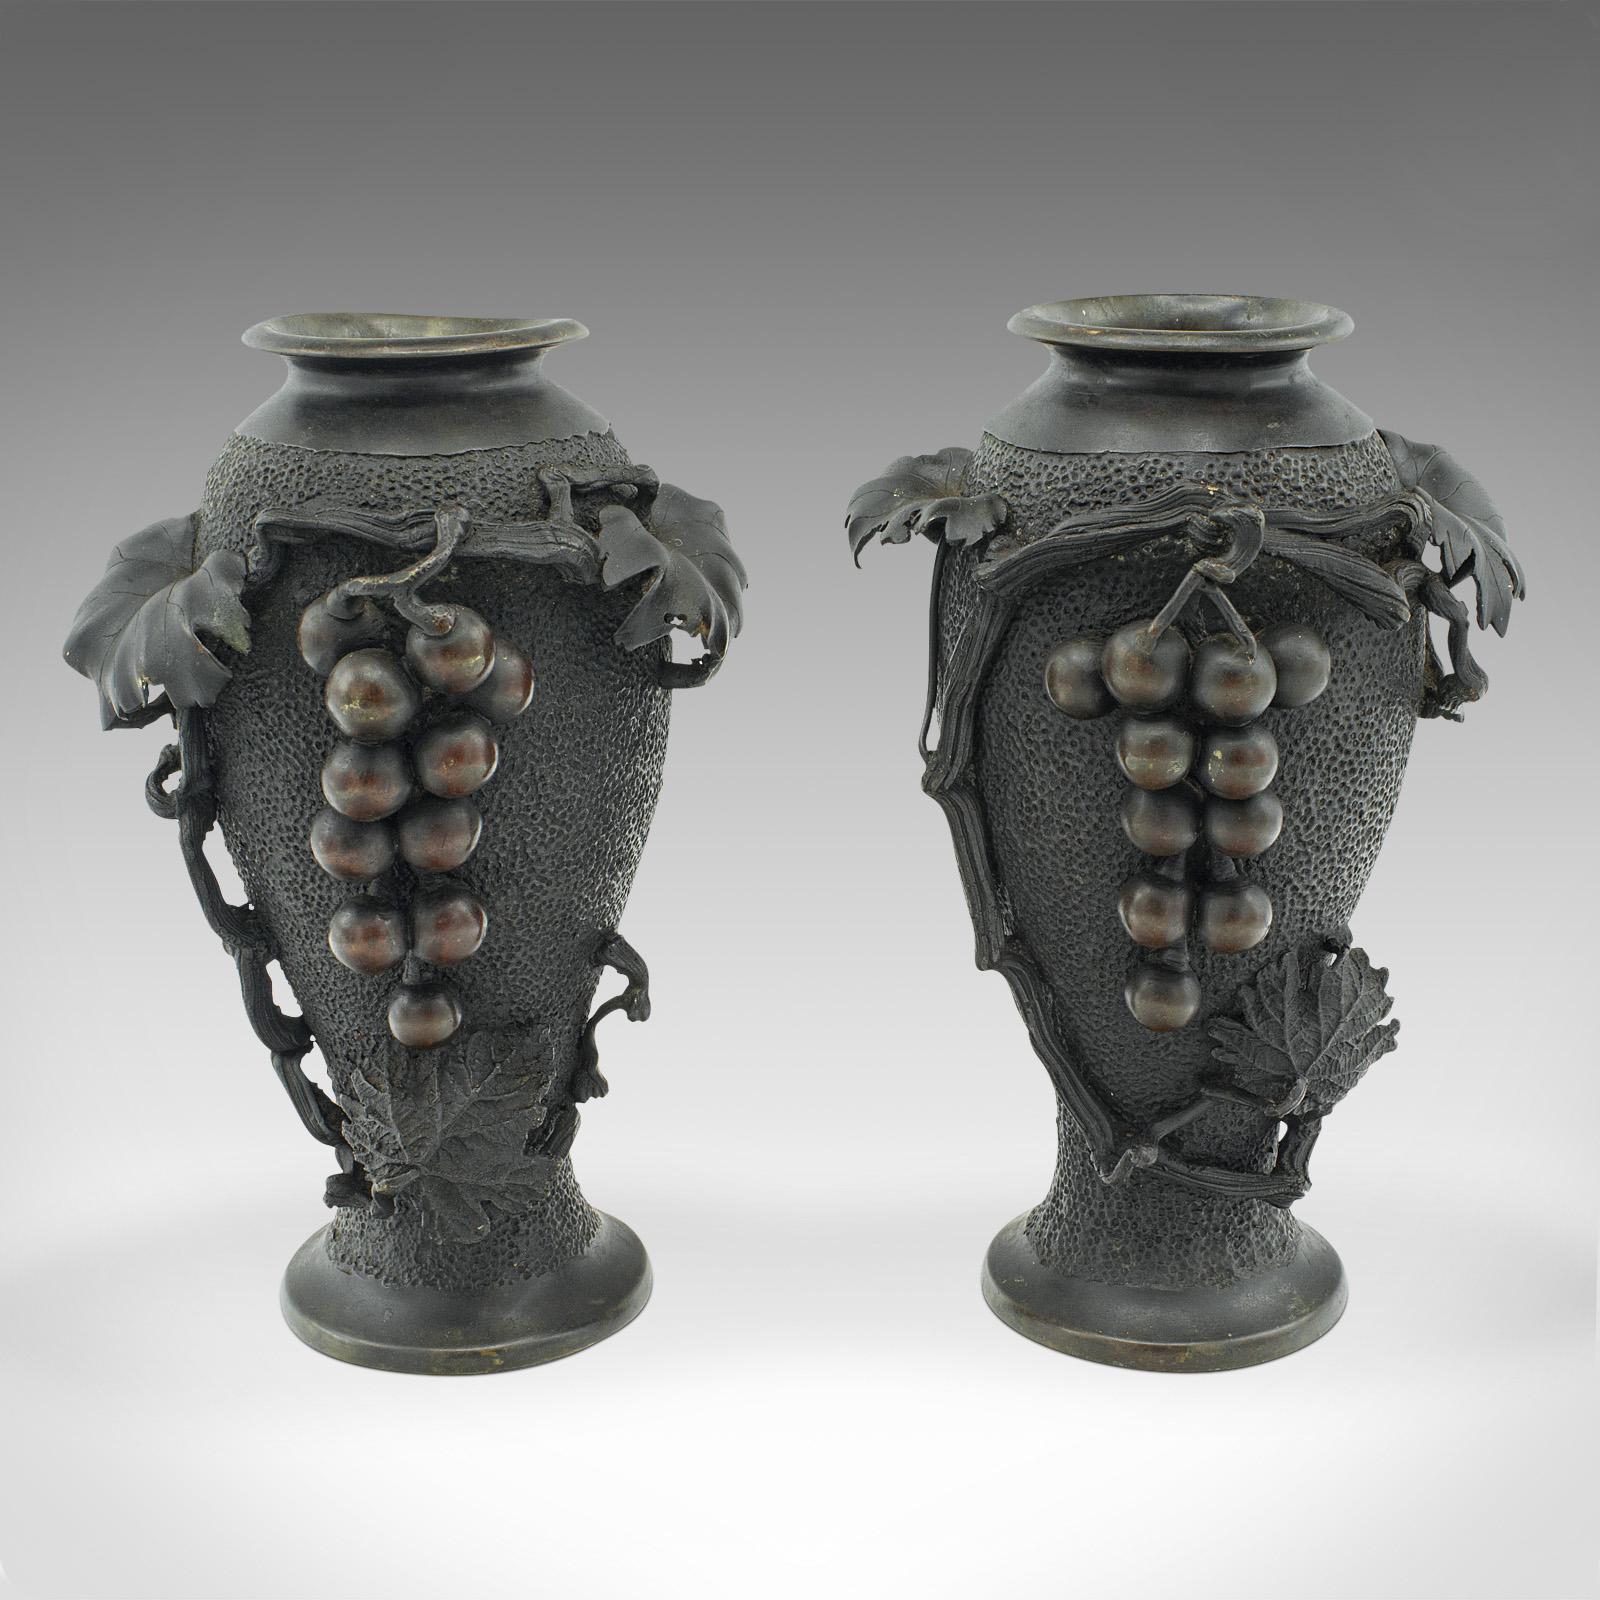 Il s'agit d'une paire de vases décoratifs anciens. Un balustre japonais en bronze de la période Meiji, datant du milieu de l'époque victorienne, vers 1870.

Vases aux proportions attrayantes, sculptés et finis de façon remarquable
Patine